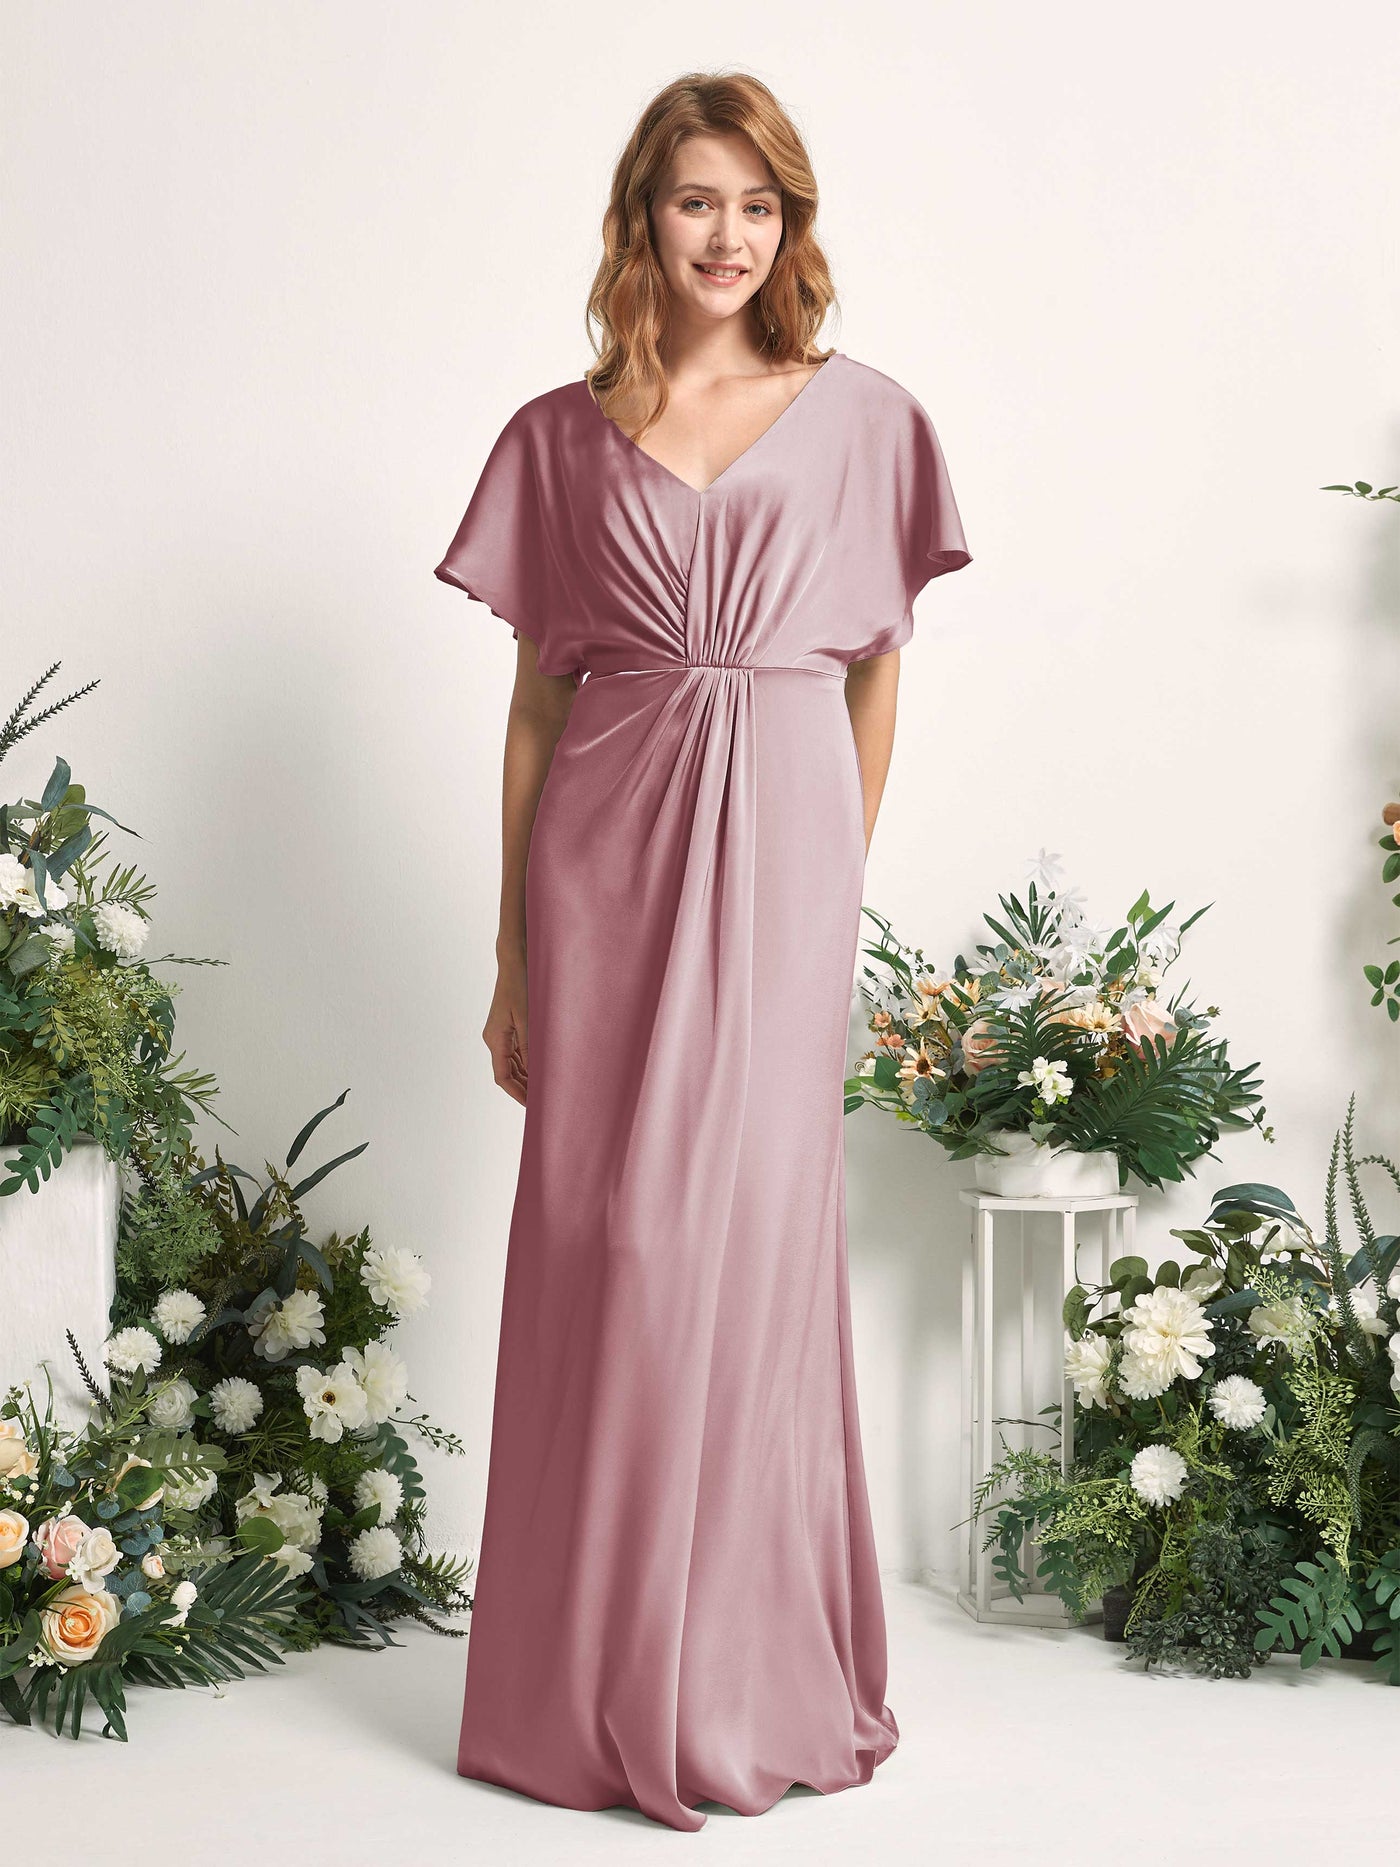 Rose Quartz Bridesmaid Dresses Bridesmaid Dress A-line Satin V-neck Full Length Short Sleeves Wedding Party Dress (80225566)#color_rose-quartz